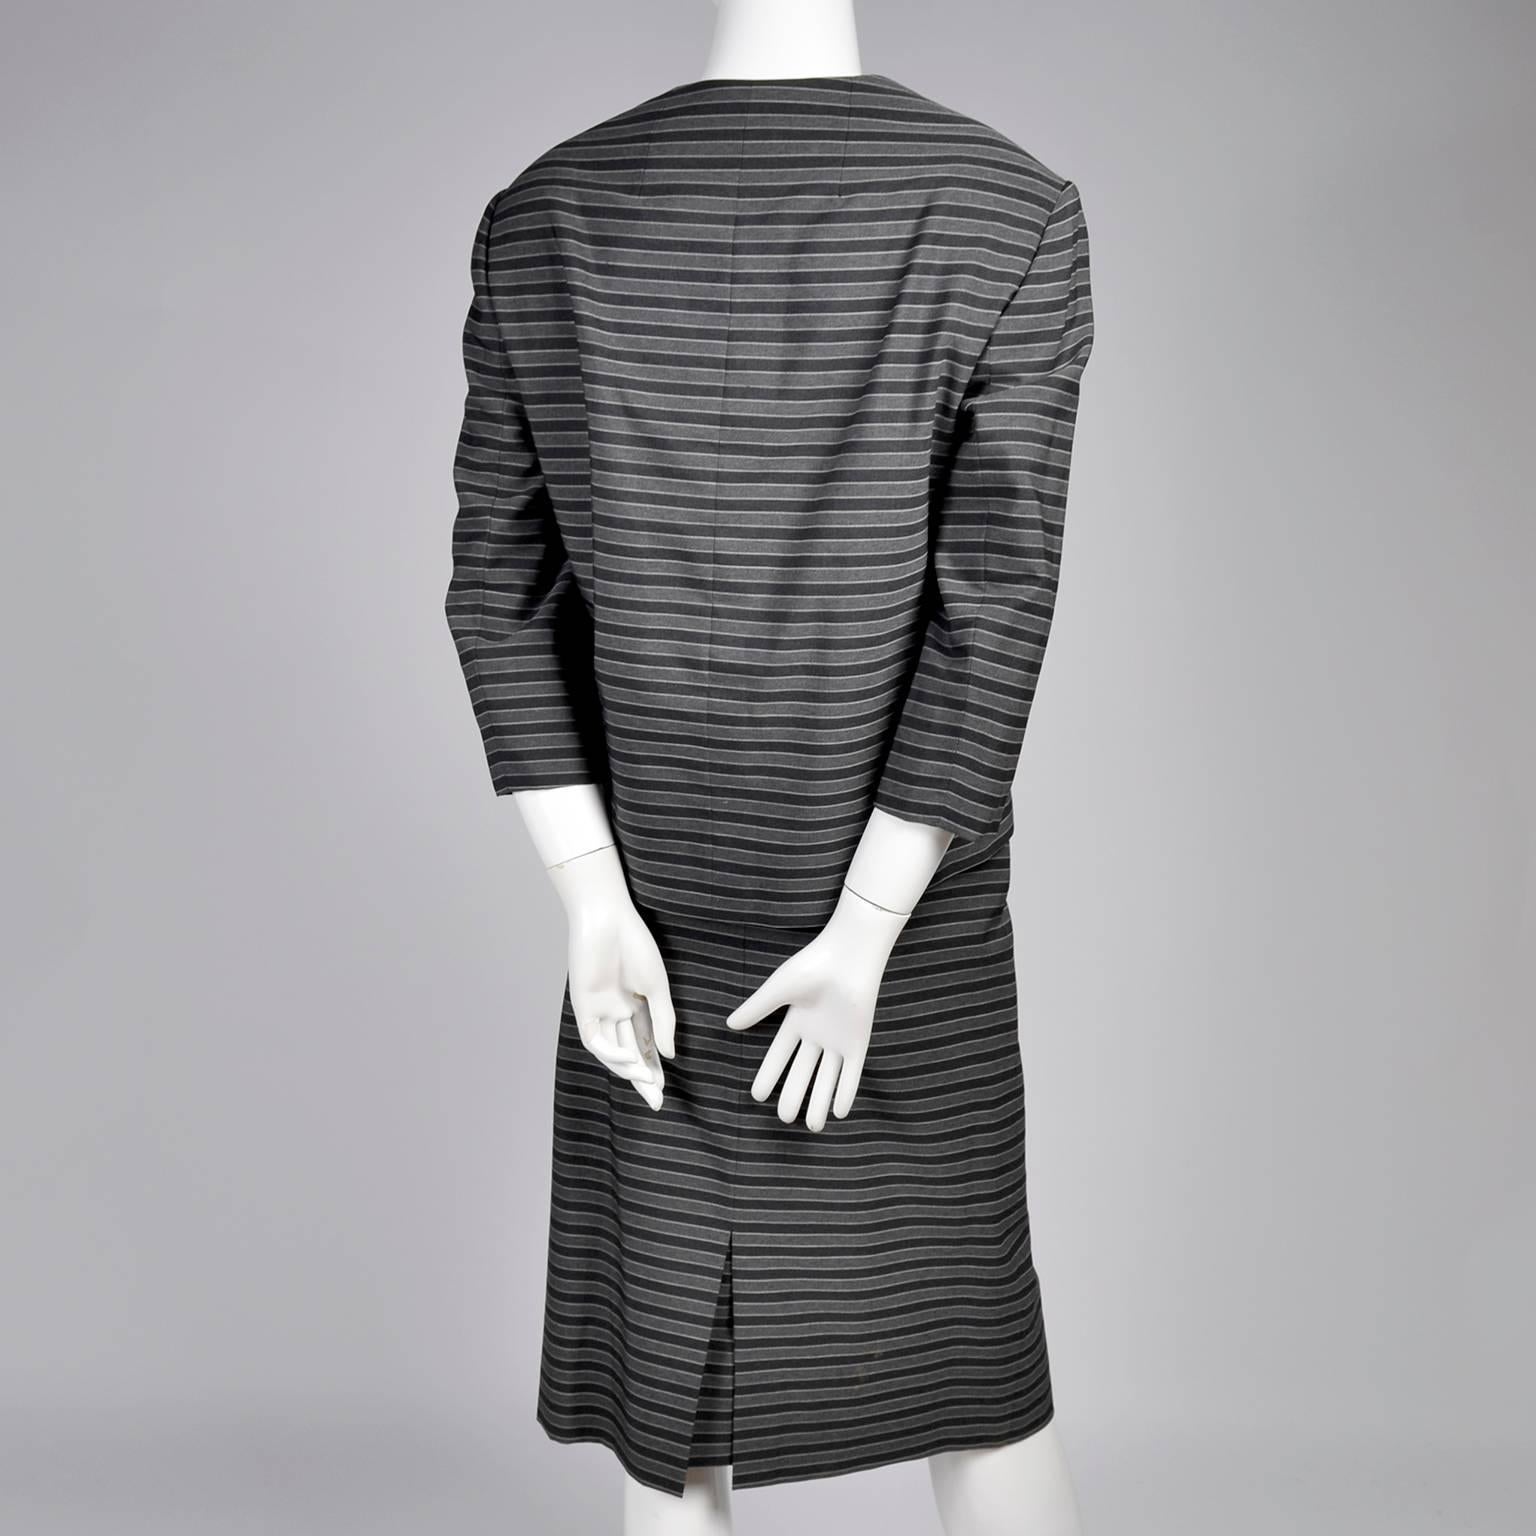 1960er Jahre Vintage Irene Lentz Anzug von Bullocks Wilshire in Grau und Schwarz gestreiften Streifen 2